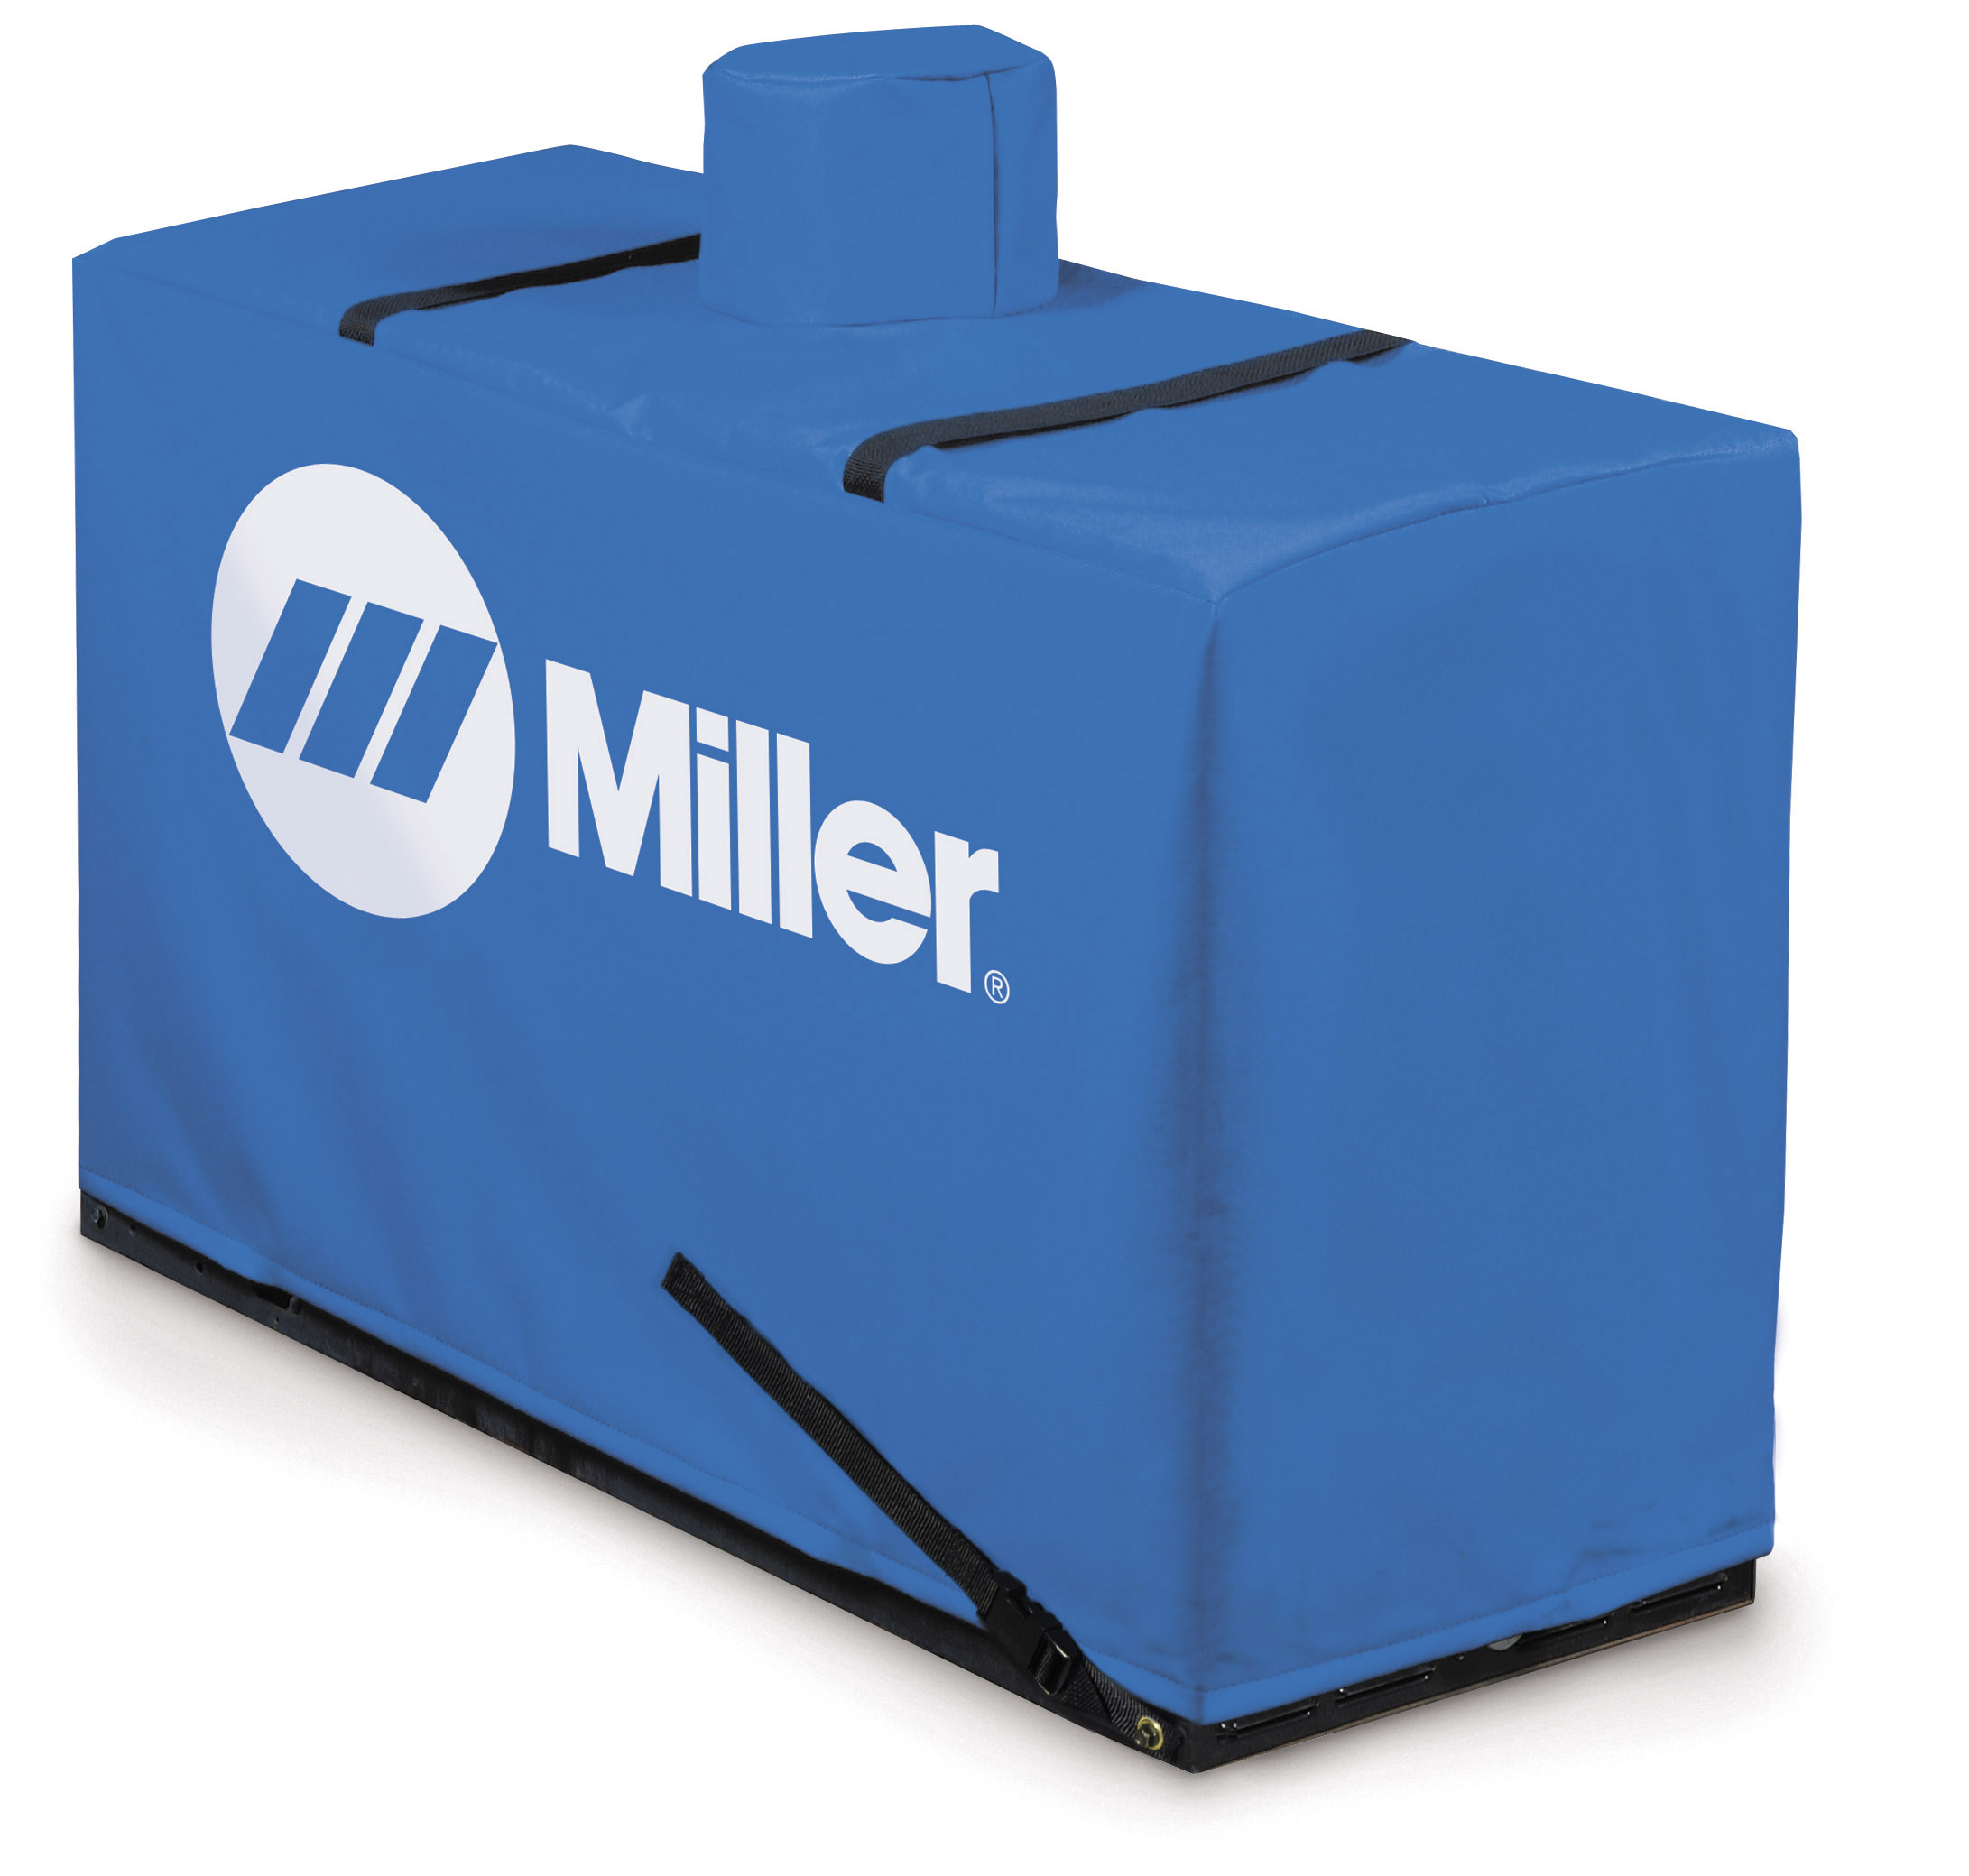 Miller bobcat / Trailblazer Protective Cover (Current Diesel / Older Gas Models)